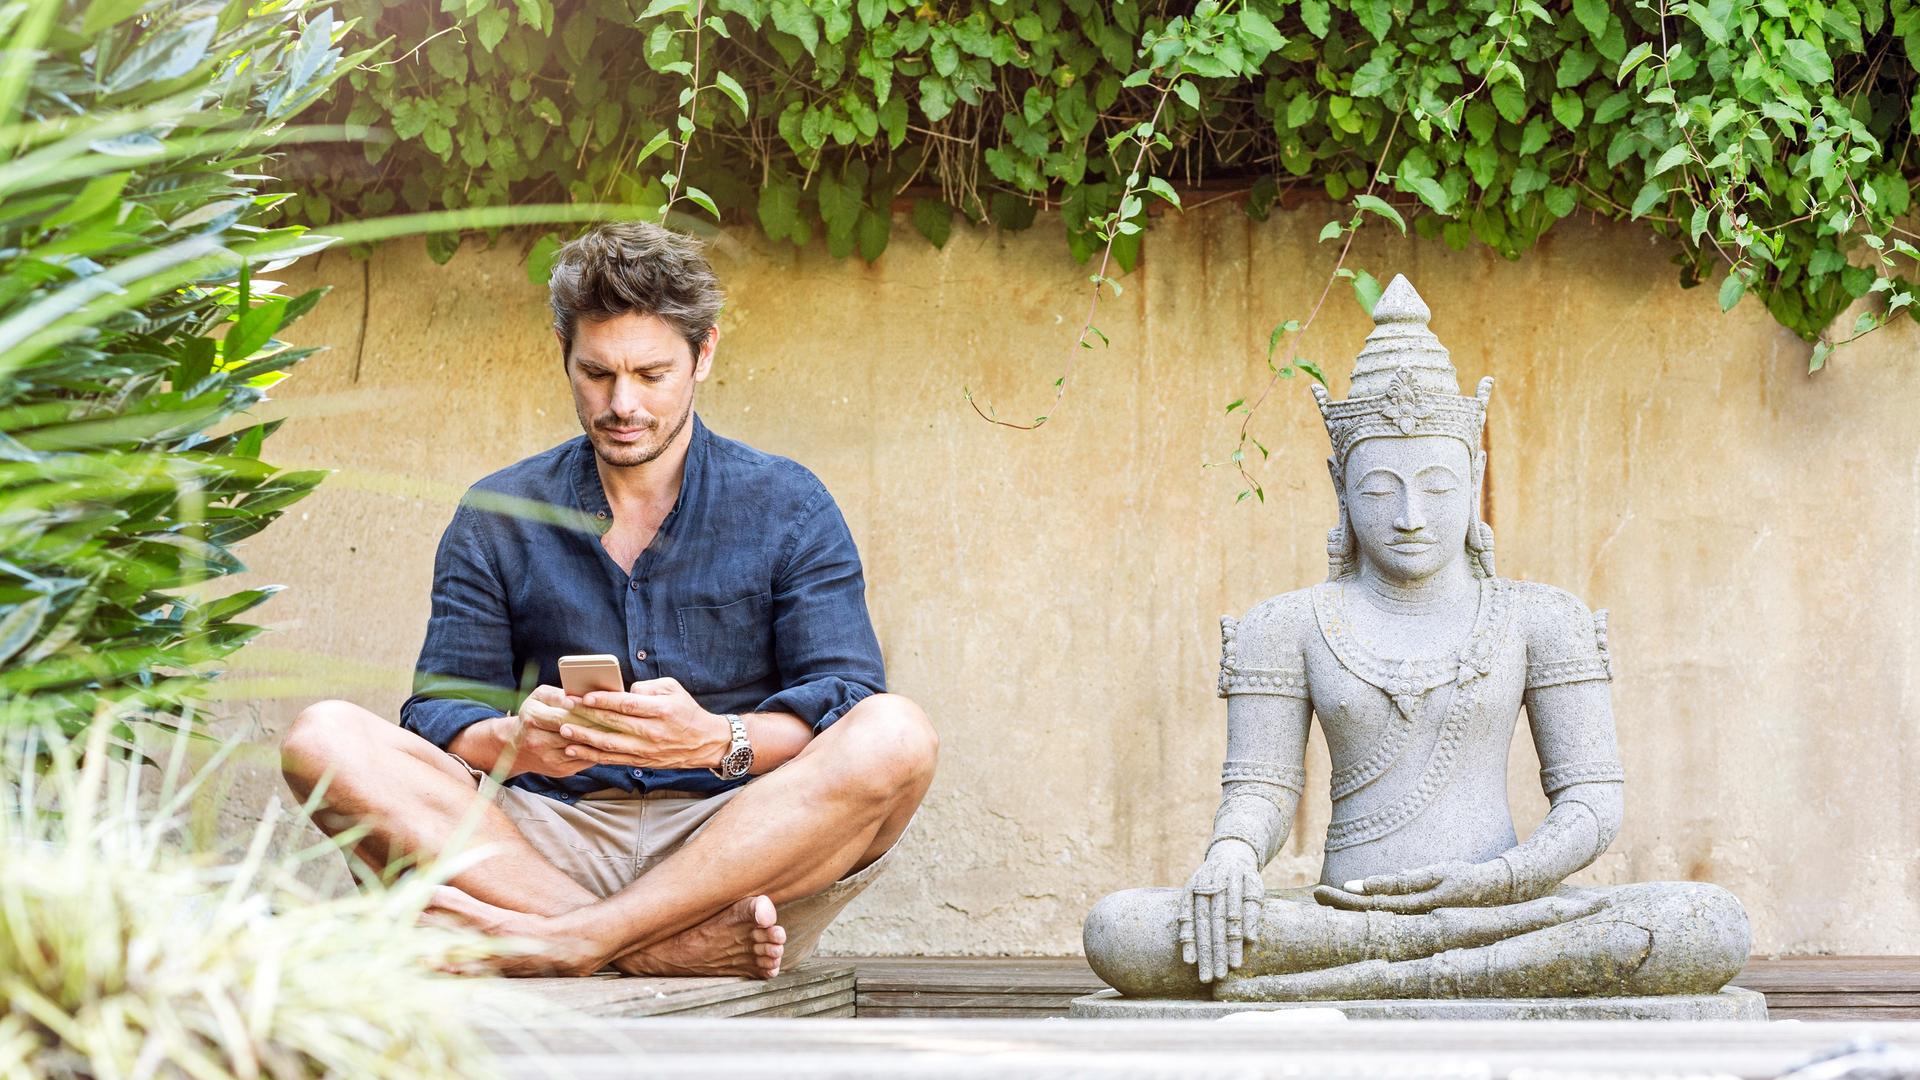 Ein Mann sitzt in einem Zen-Garten im Schneidersitz neben einer Buddhastatue und schaut auf sein Smartphone.